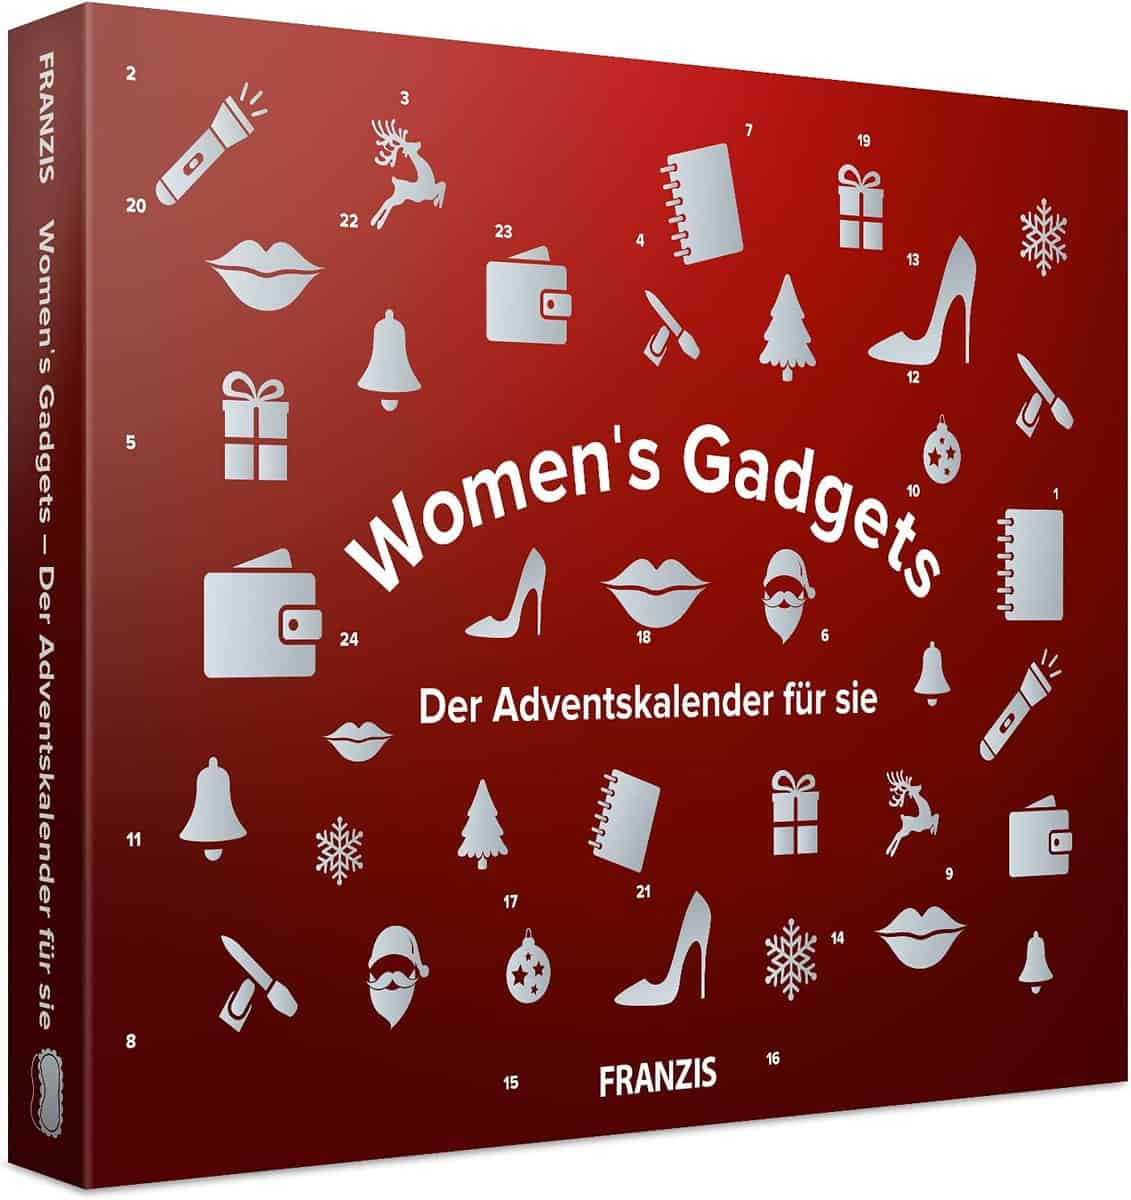 FRANZIS Women's Gadgets Adventskalender (2021er Version) - für 8,10 € [Prime] statt 25,70 €